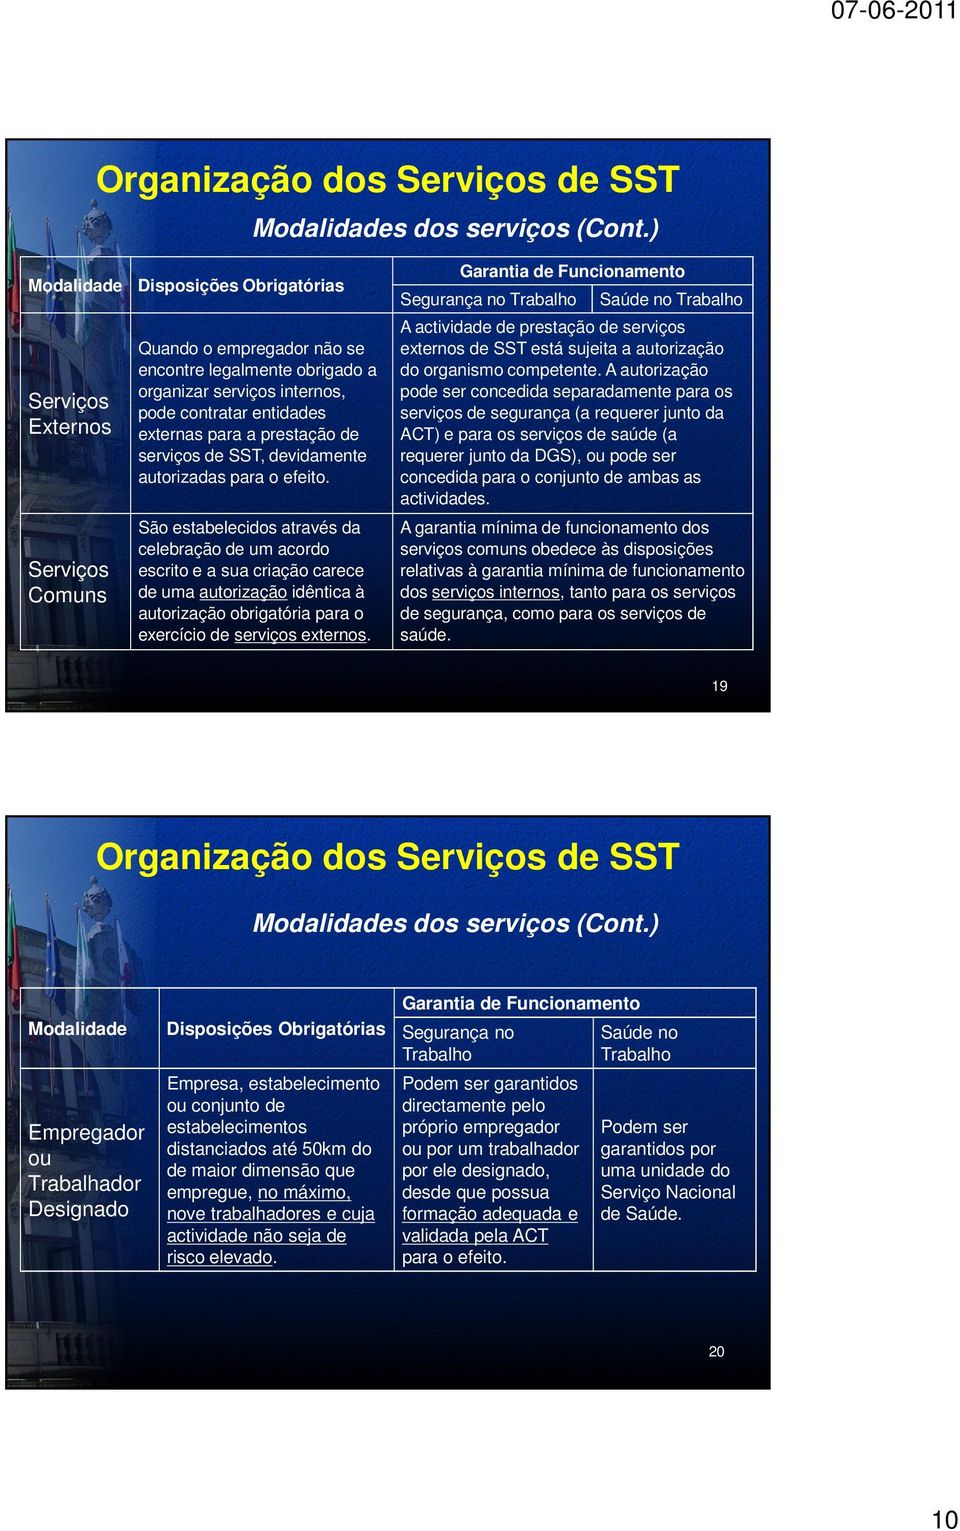 prestação de serviços de SST, devidamente autorizadas para o efeito.